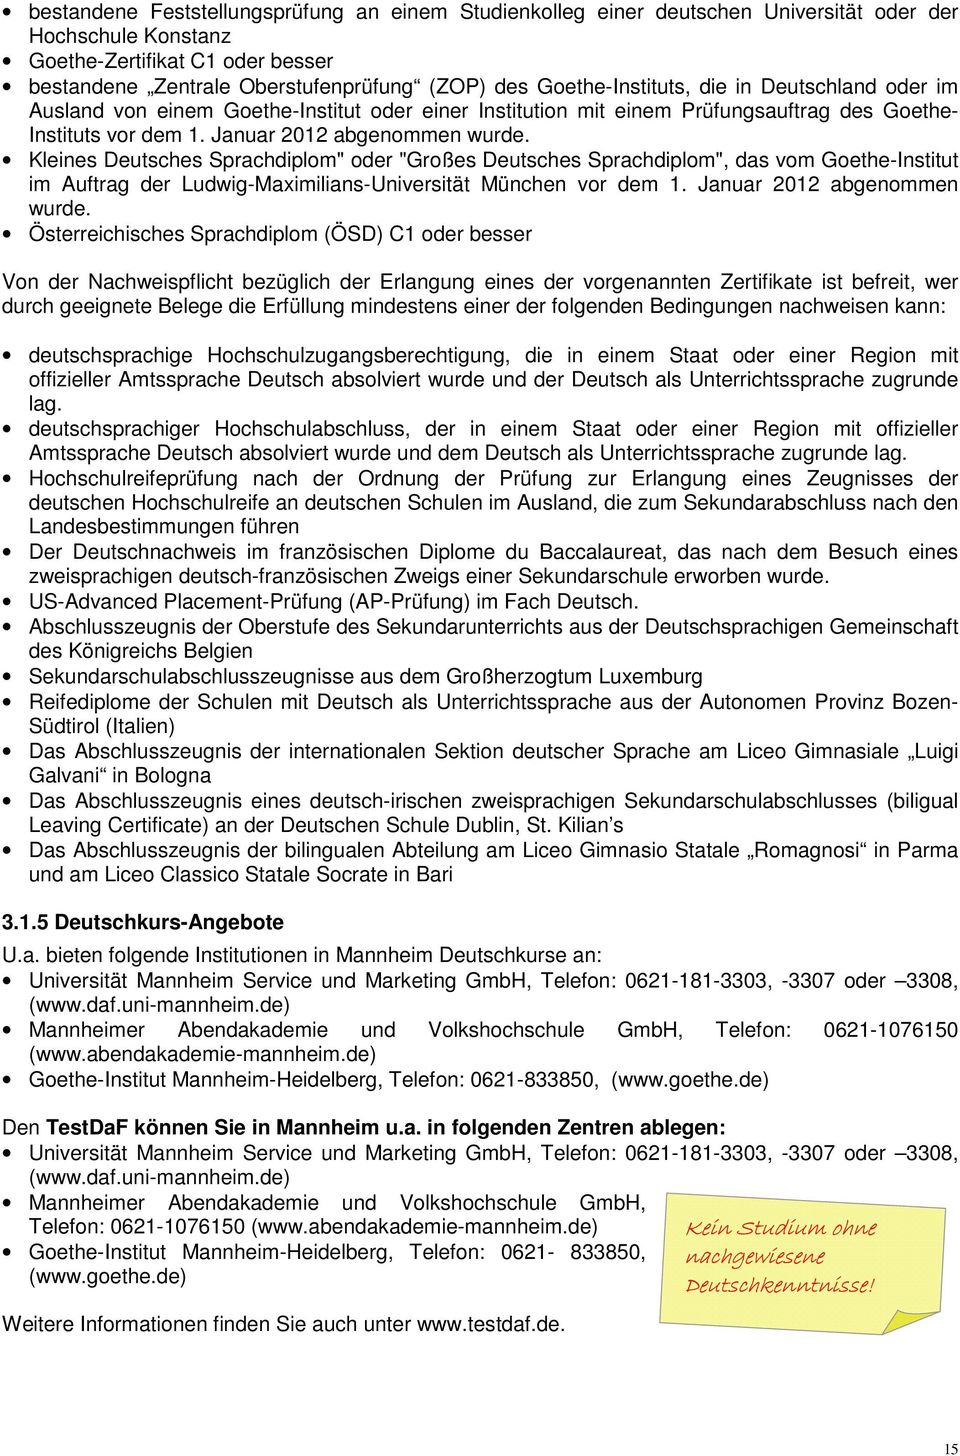 Kleines Deutsches Sprachdiplom" oder "Großes Deutsches Sprachdiplom", das vom Goethe-Institut im Auftrag der Ludwig-Maximilians-Universität München vor dem 1. Januar 2012 abgenommen wurde.